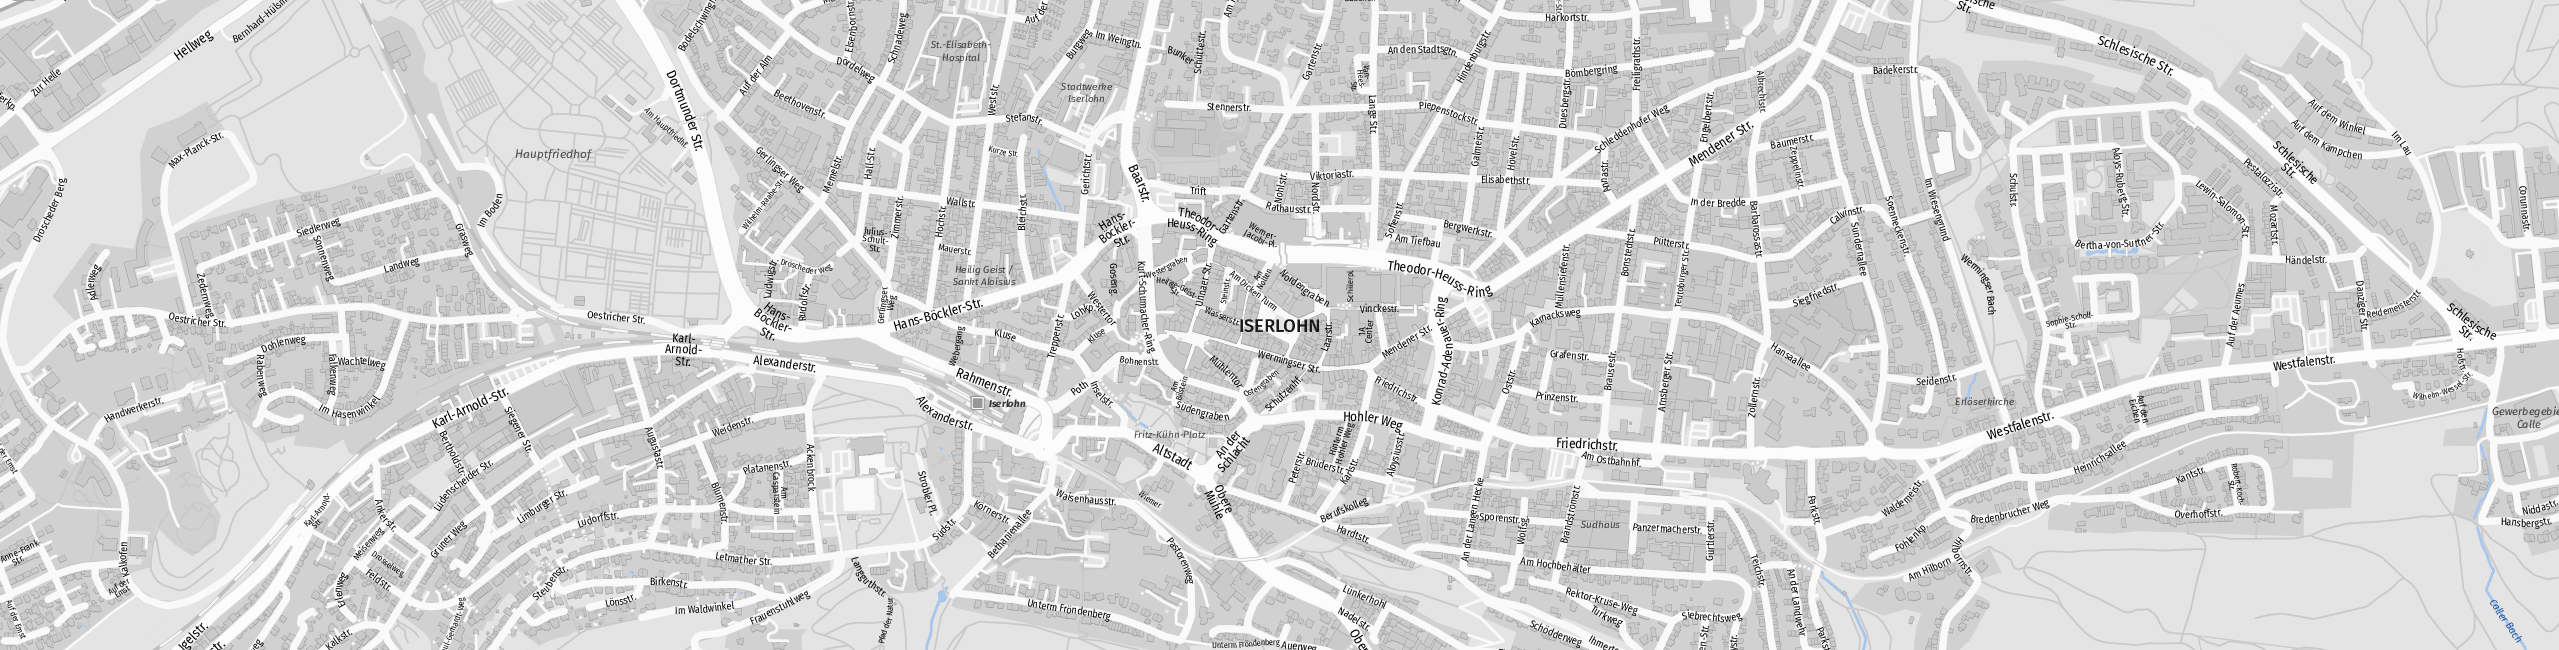 Stadtplan Iserlohn zum Downloaden.